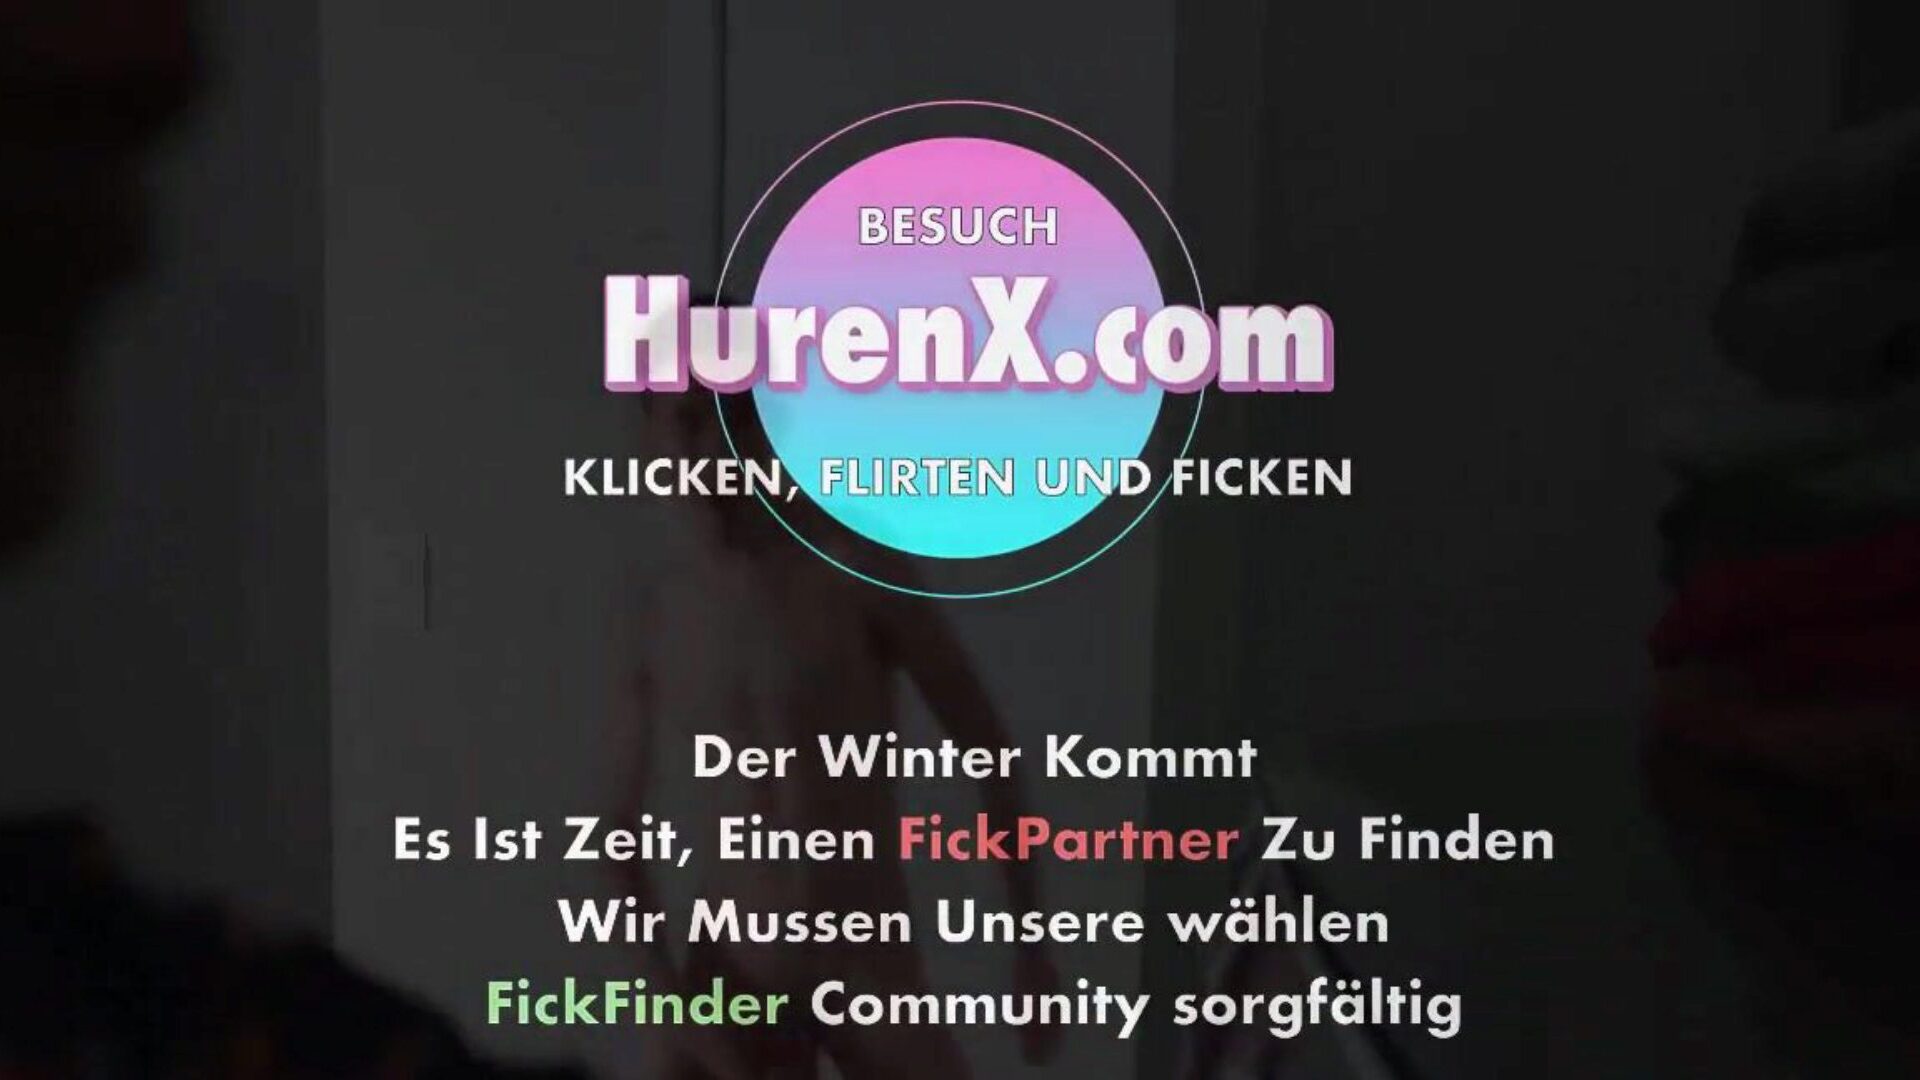 stiefsohn fickt stiefmutter, darmowy mutter niemieckie porno hd c3 oglądaj odcinek stiefsohn fickt stiefmutter na xhamster, najgrubsza strona internetowa z kanałem hump w jakości HD z mnóstwem niemieckich filmów porno z niemym mrukiem i ujizz